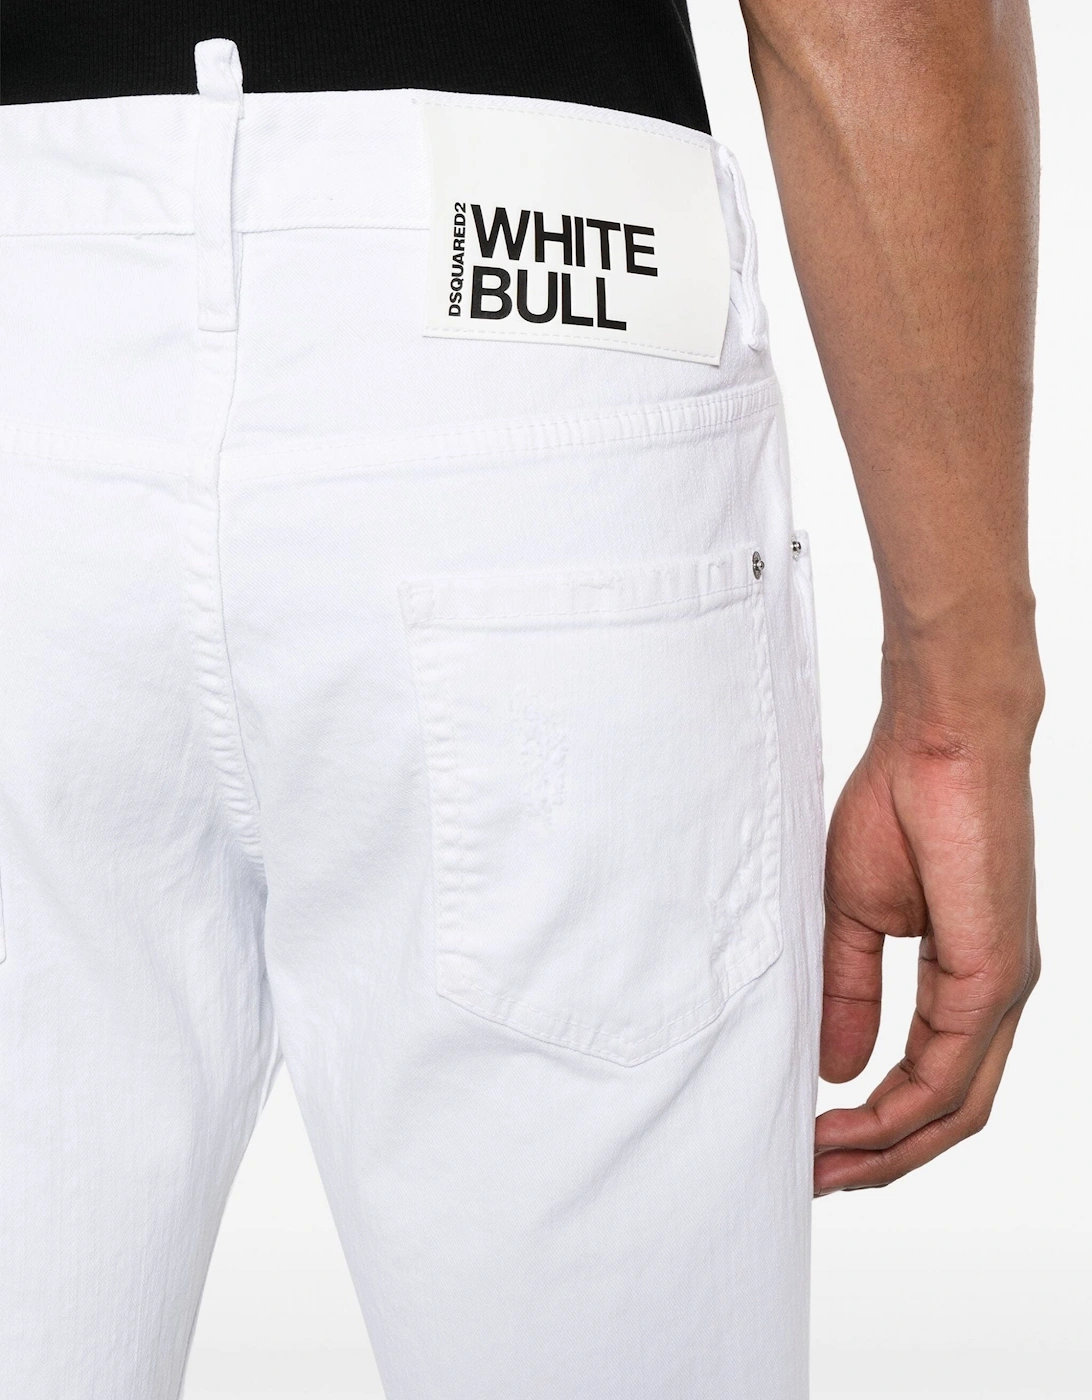 White Bull Skater Jeans Solid White